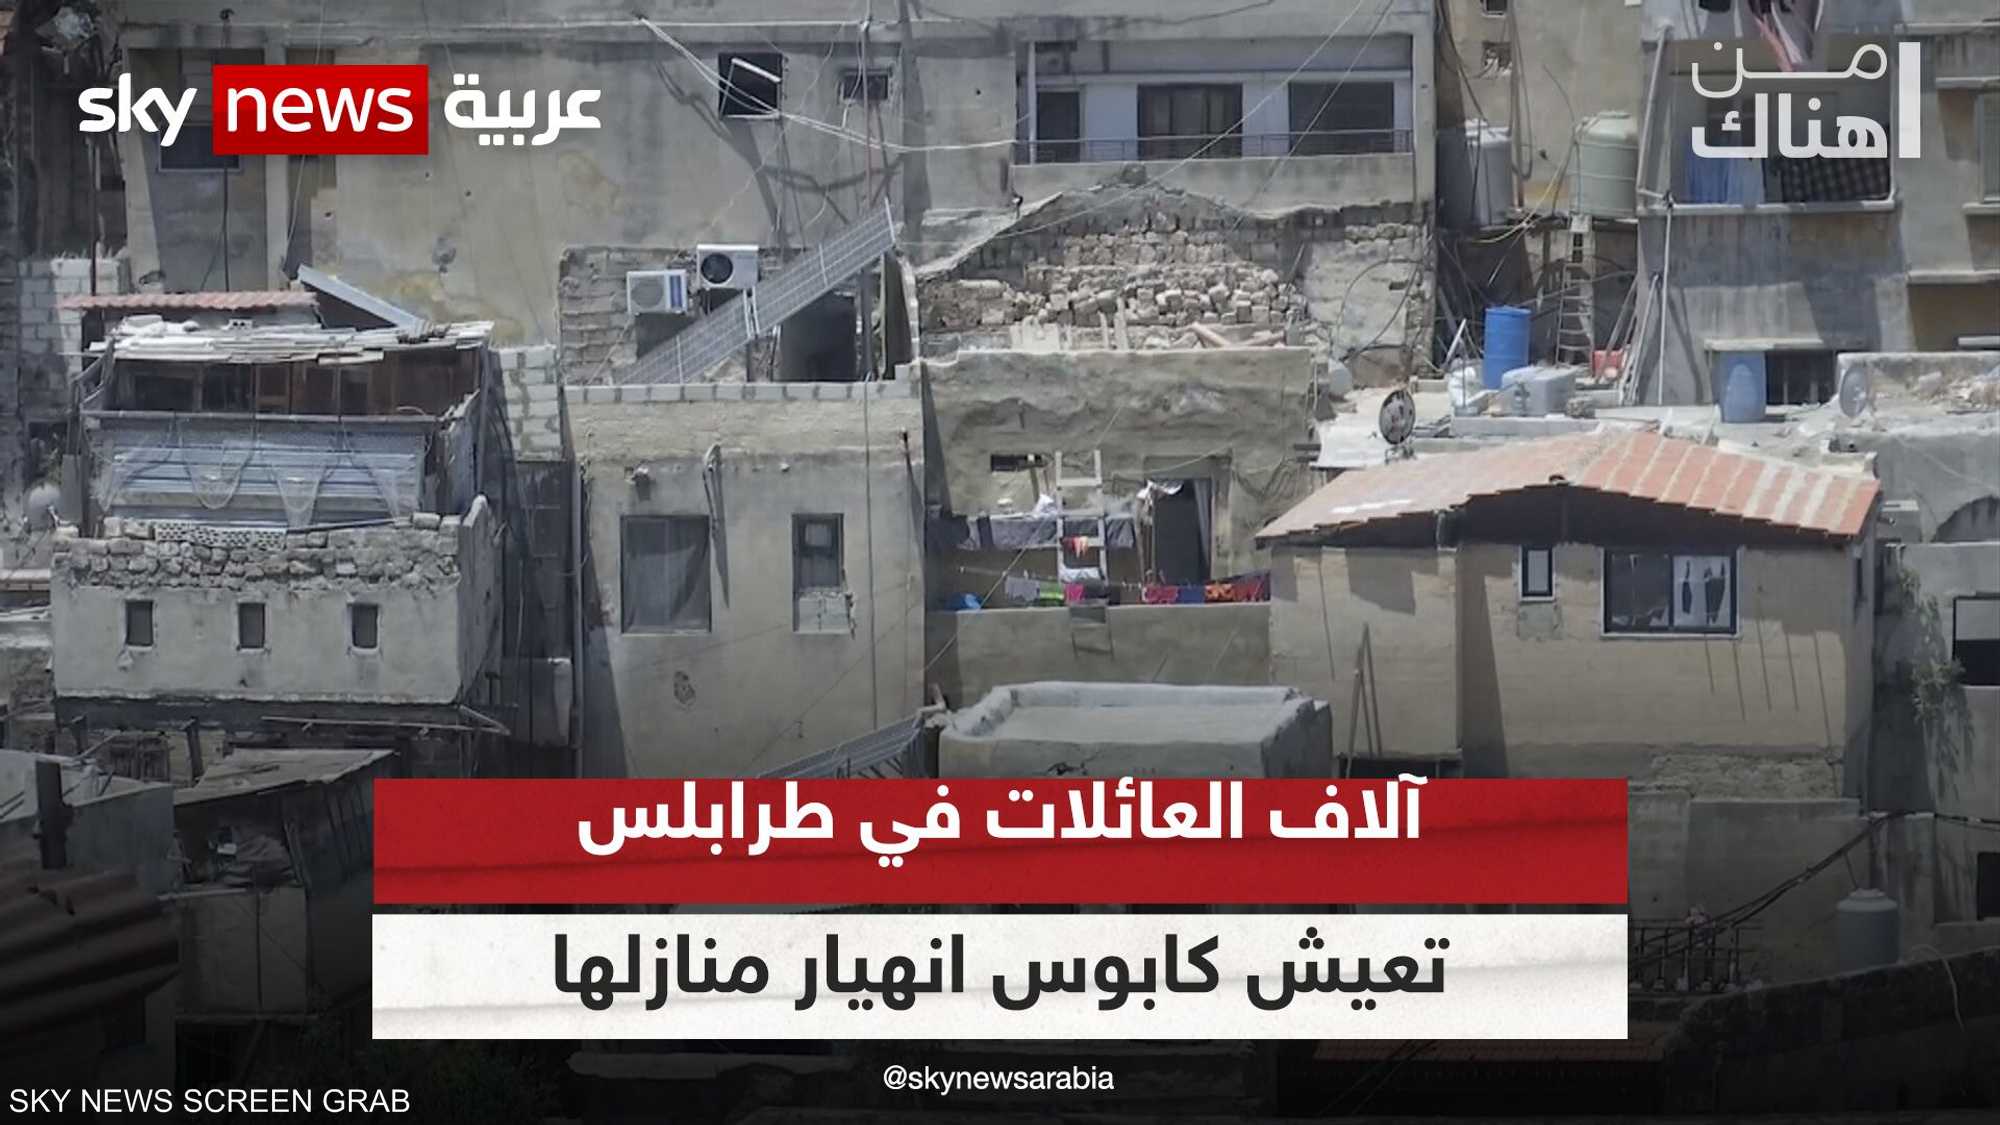 المباني الآيلة للسقوط في أحياء طرابلس.. وأَرق لا ينتهي